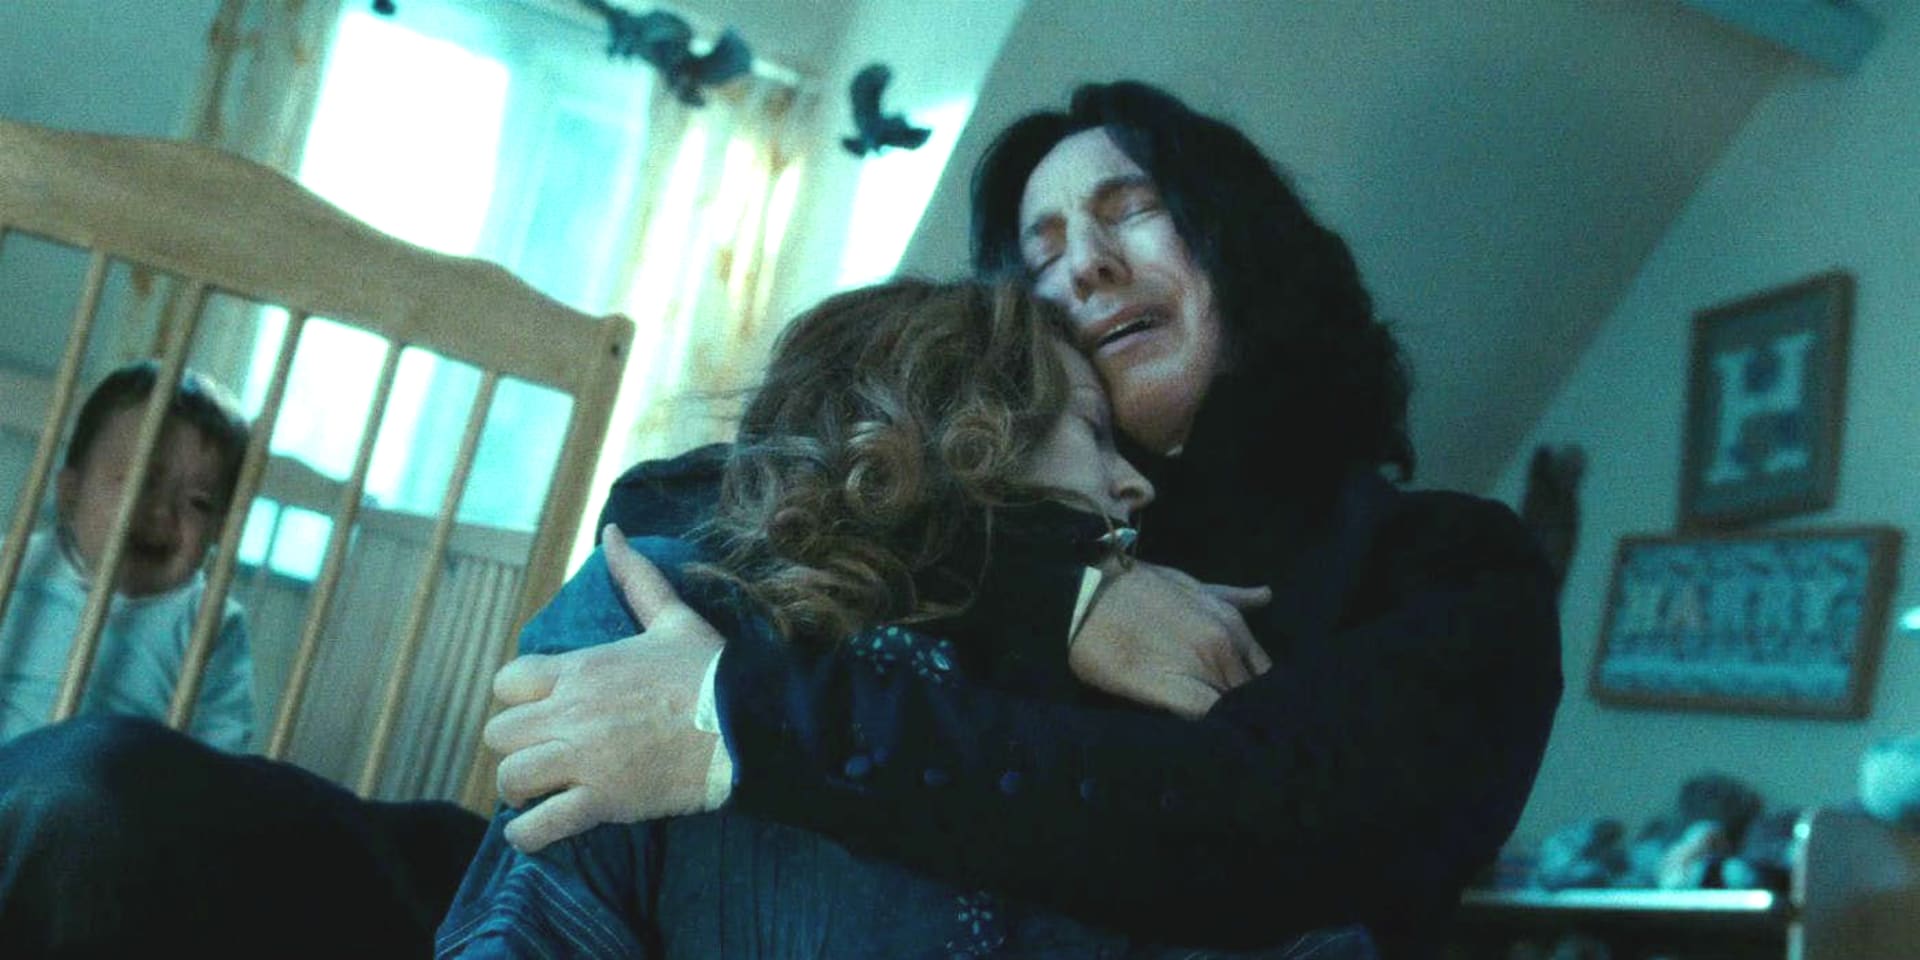 Co si představitel Snapea myslel o filmech s Harrym Potterem? 1